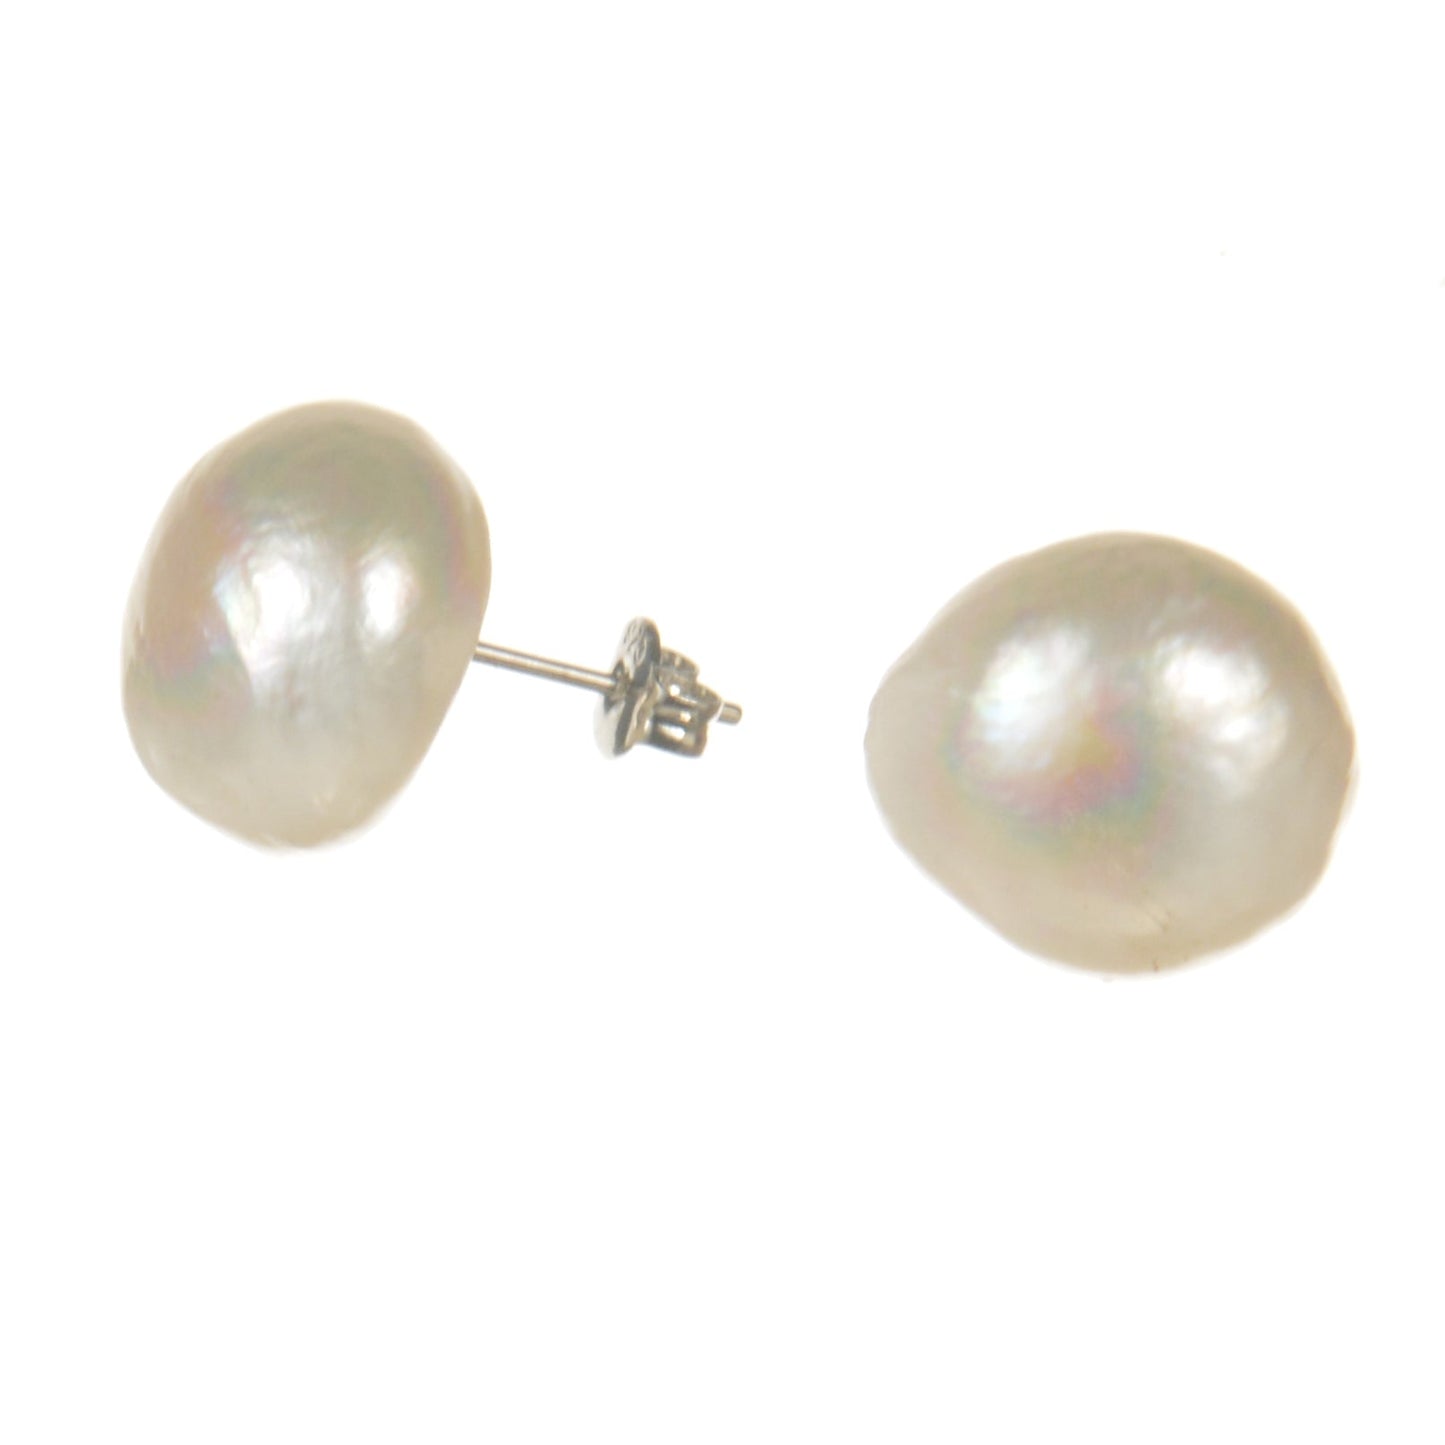 Baroque Freshwater Pearl Stud earrings